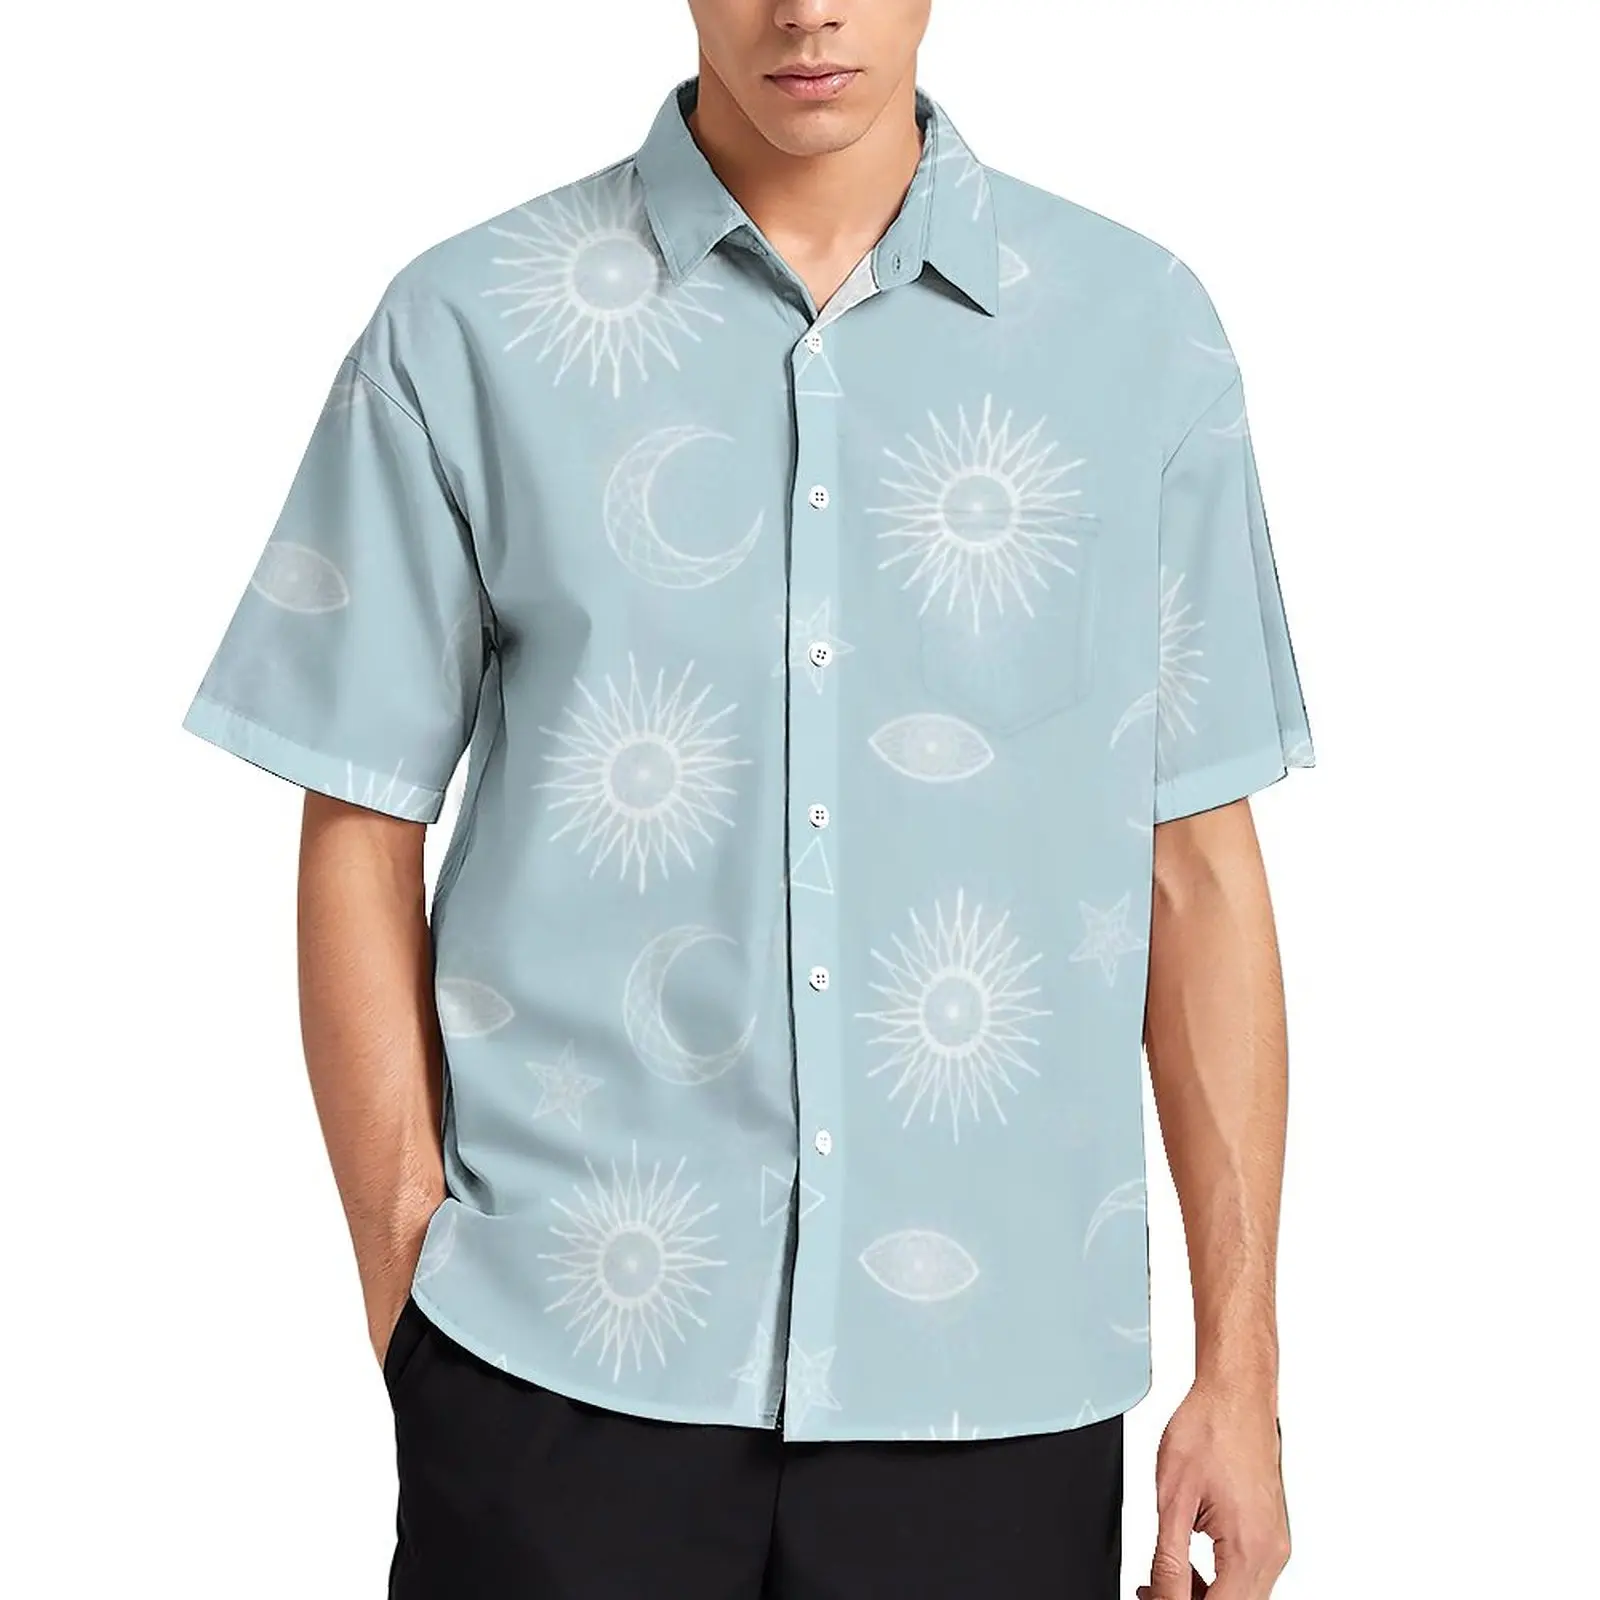 

Рубашка для отпуска с волшебными символами, мужские повседневные рубашки с белыми луной, солнцем и звездами, гавайская дизайнерская крутая блузка большого размера с коротким рукавом, подарок